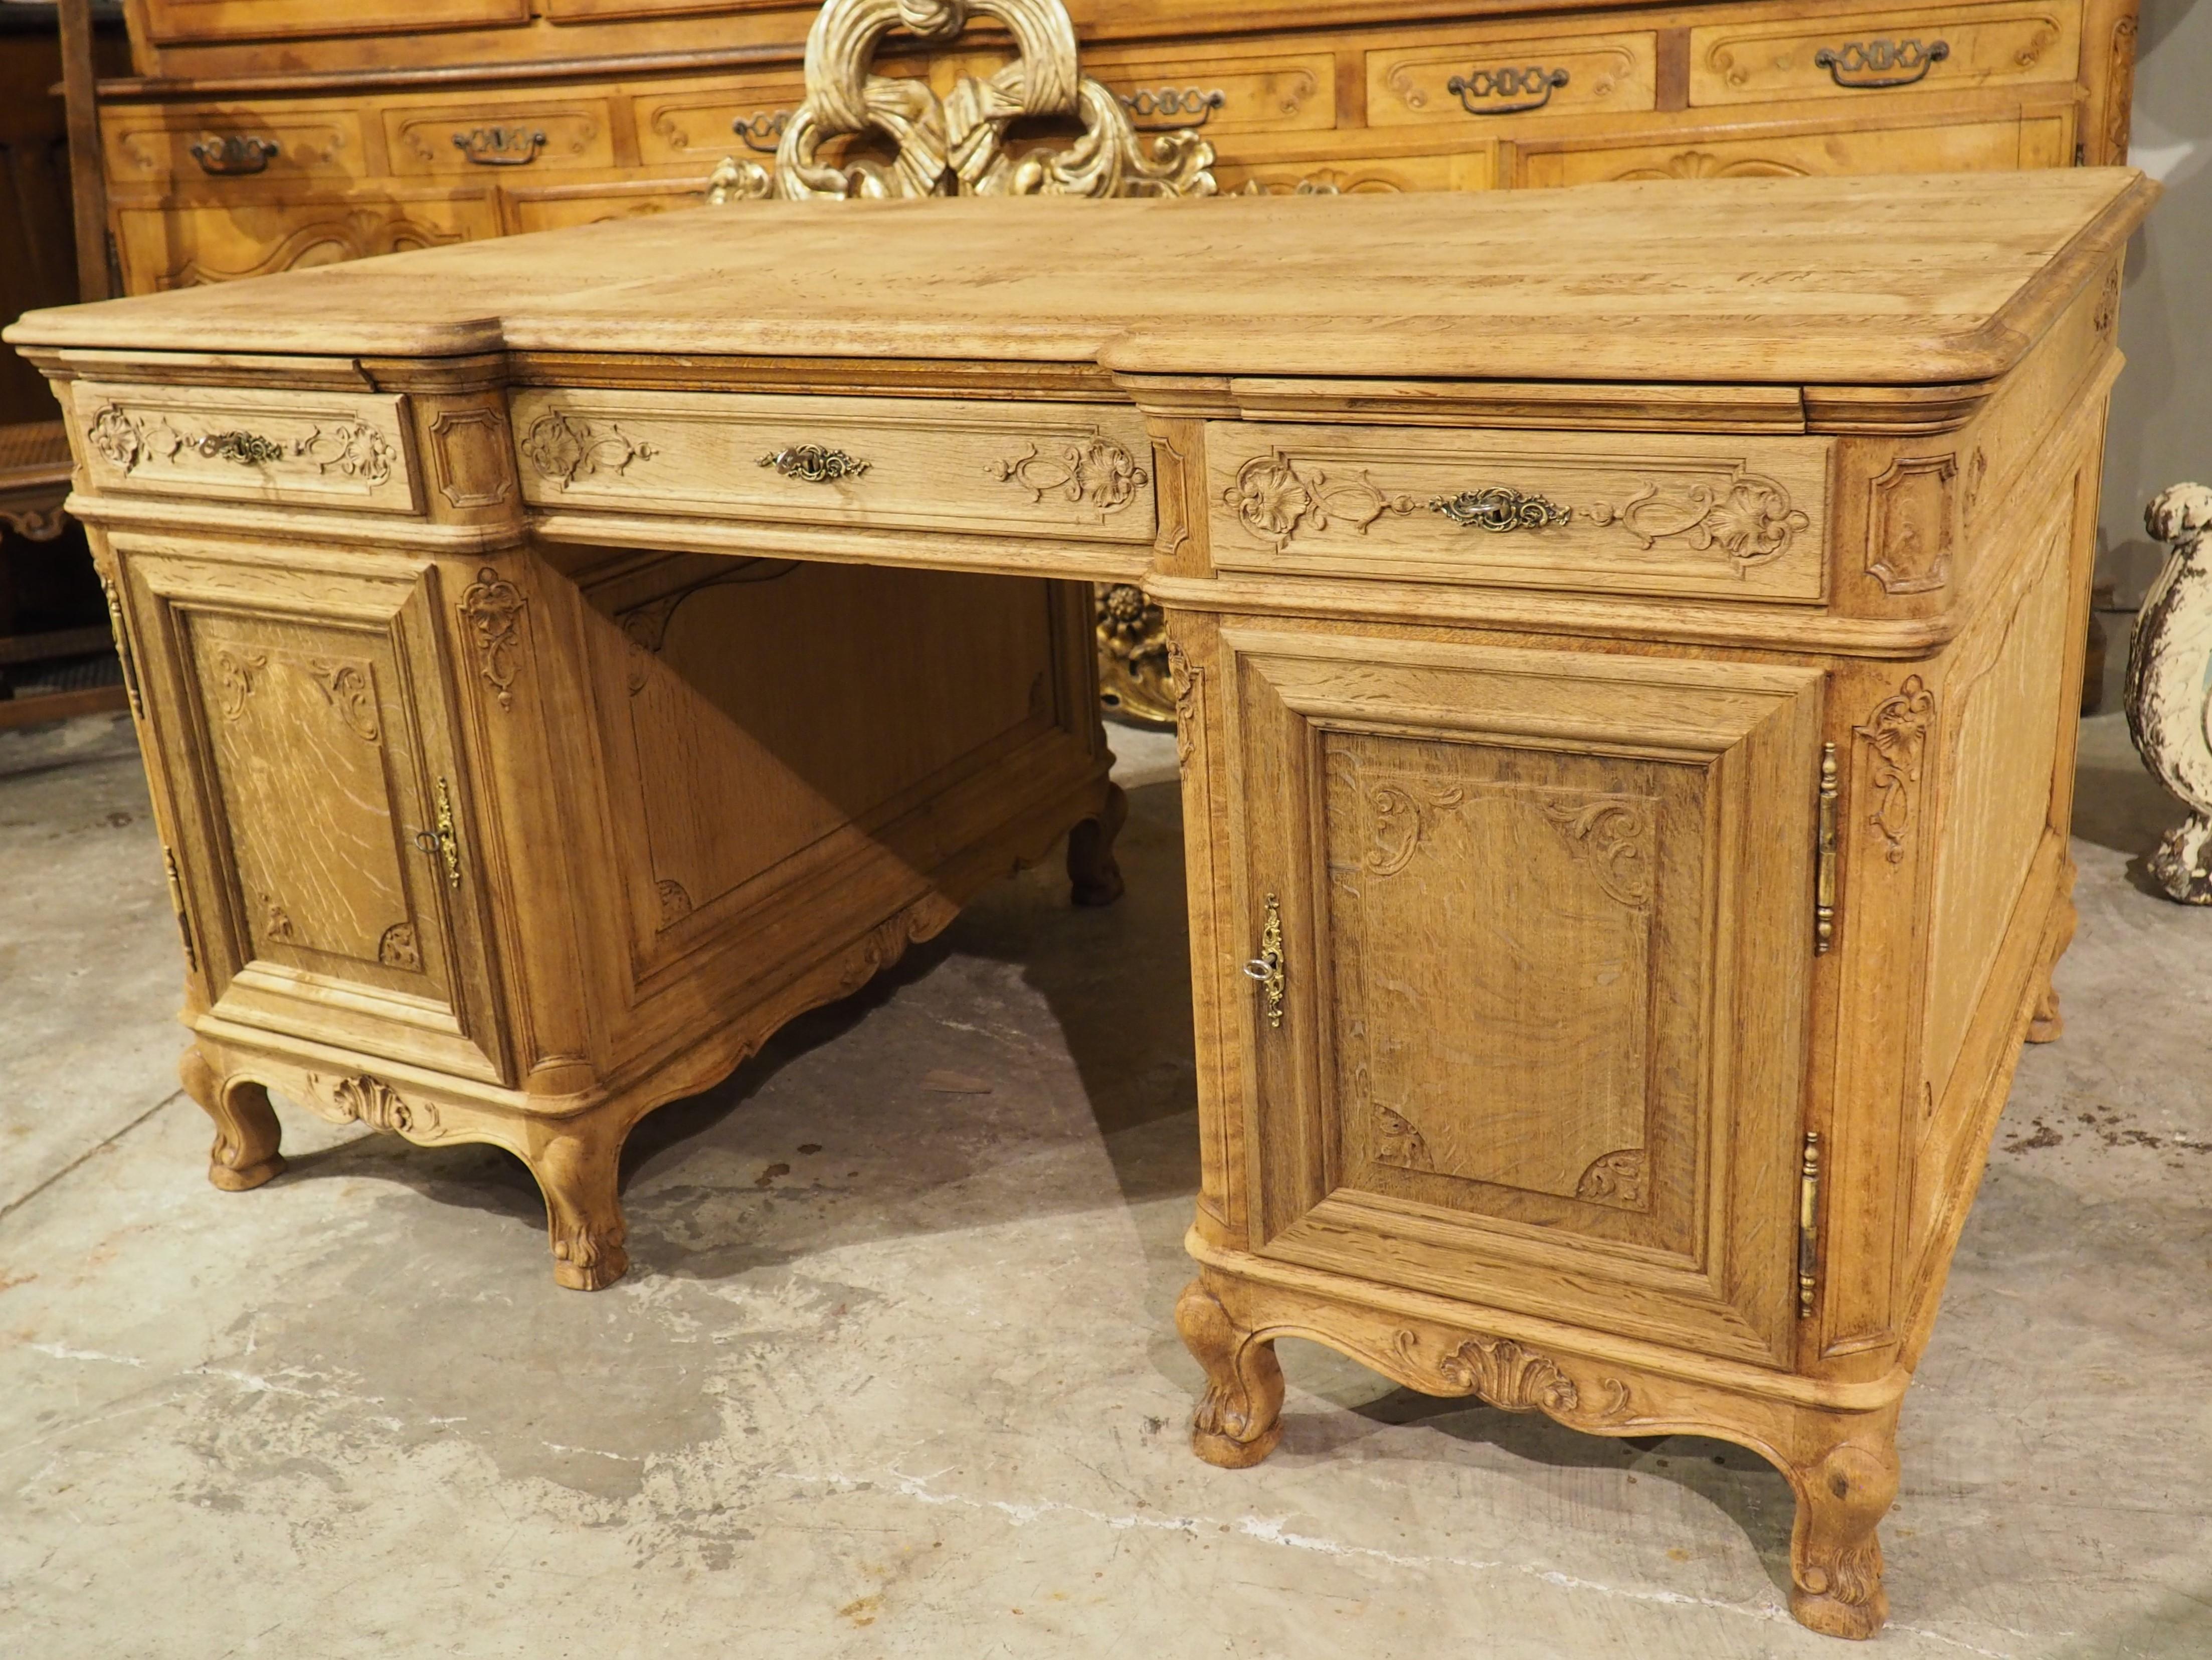 Période de transition dans l'histoire de France, la Régence est connue pour ses meubles qui reprennent les formes de la période précédente (Louis XIV), ainsi que les premiers styles de Louis XV. Dans le cas de ce bureau d'associé en chêne blanchi,